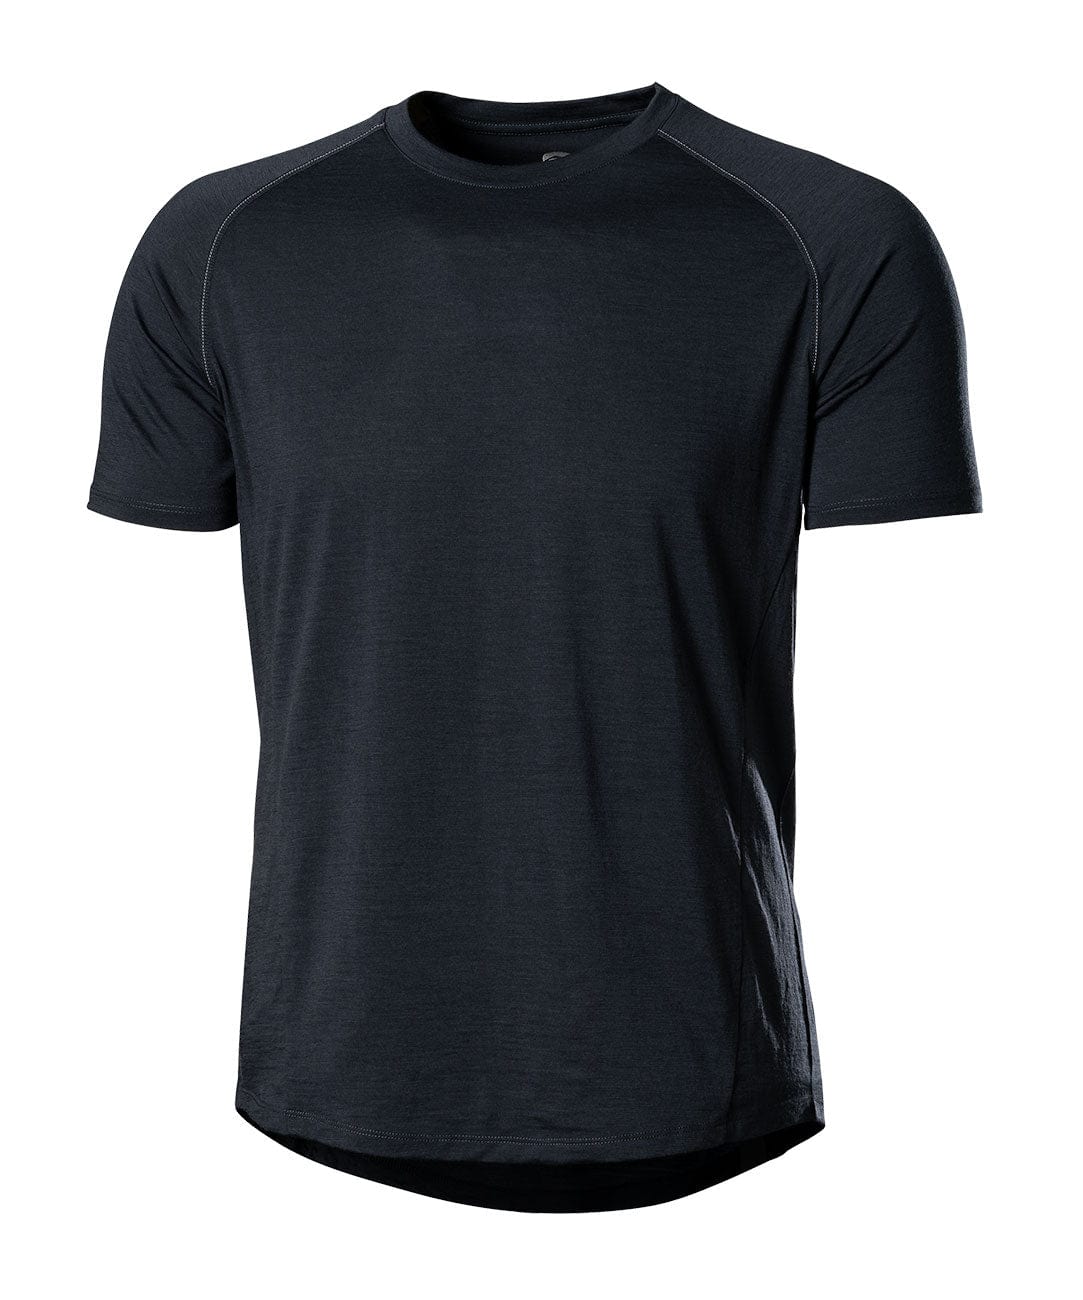 Men's Apex Merino Tech T-Shirt | Showers Pass UK – showerspassuk